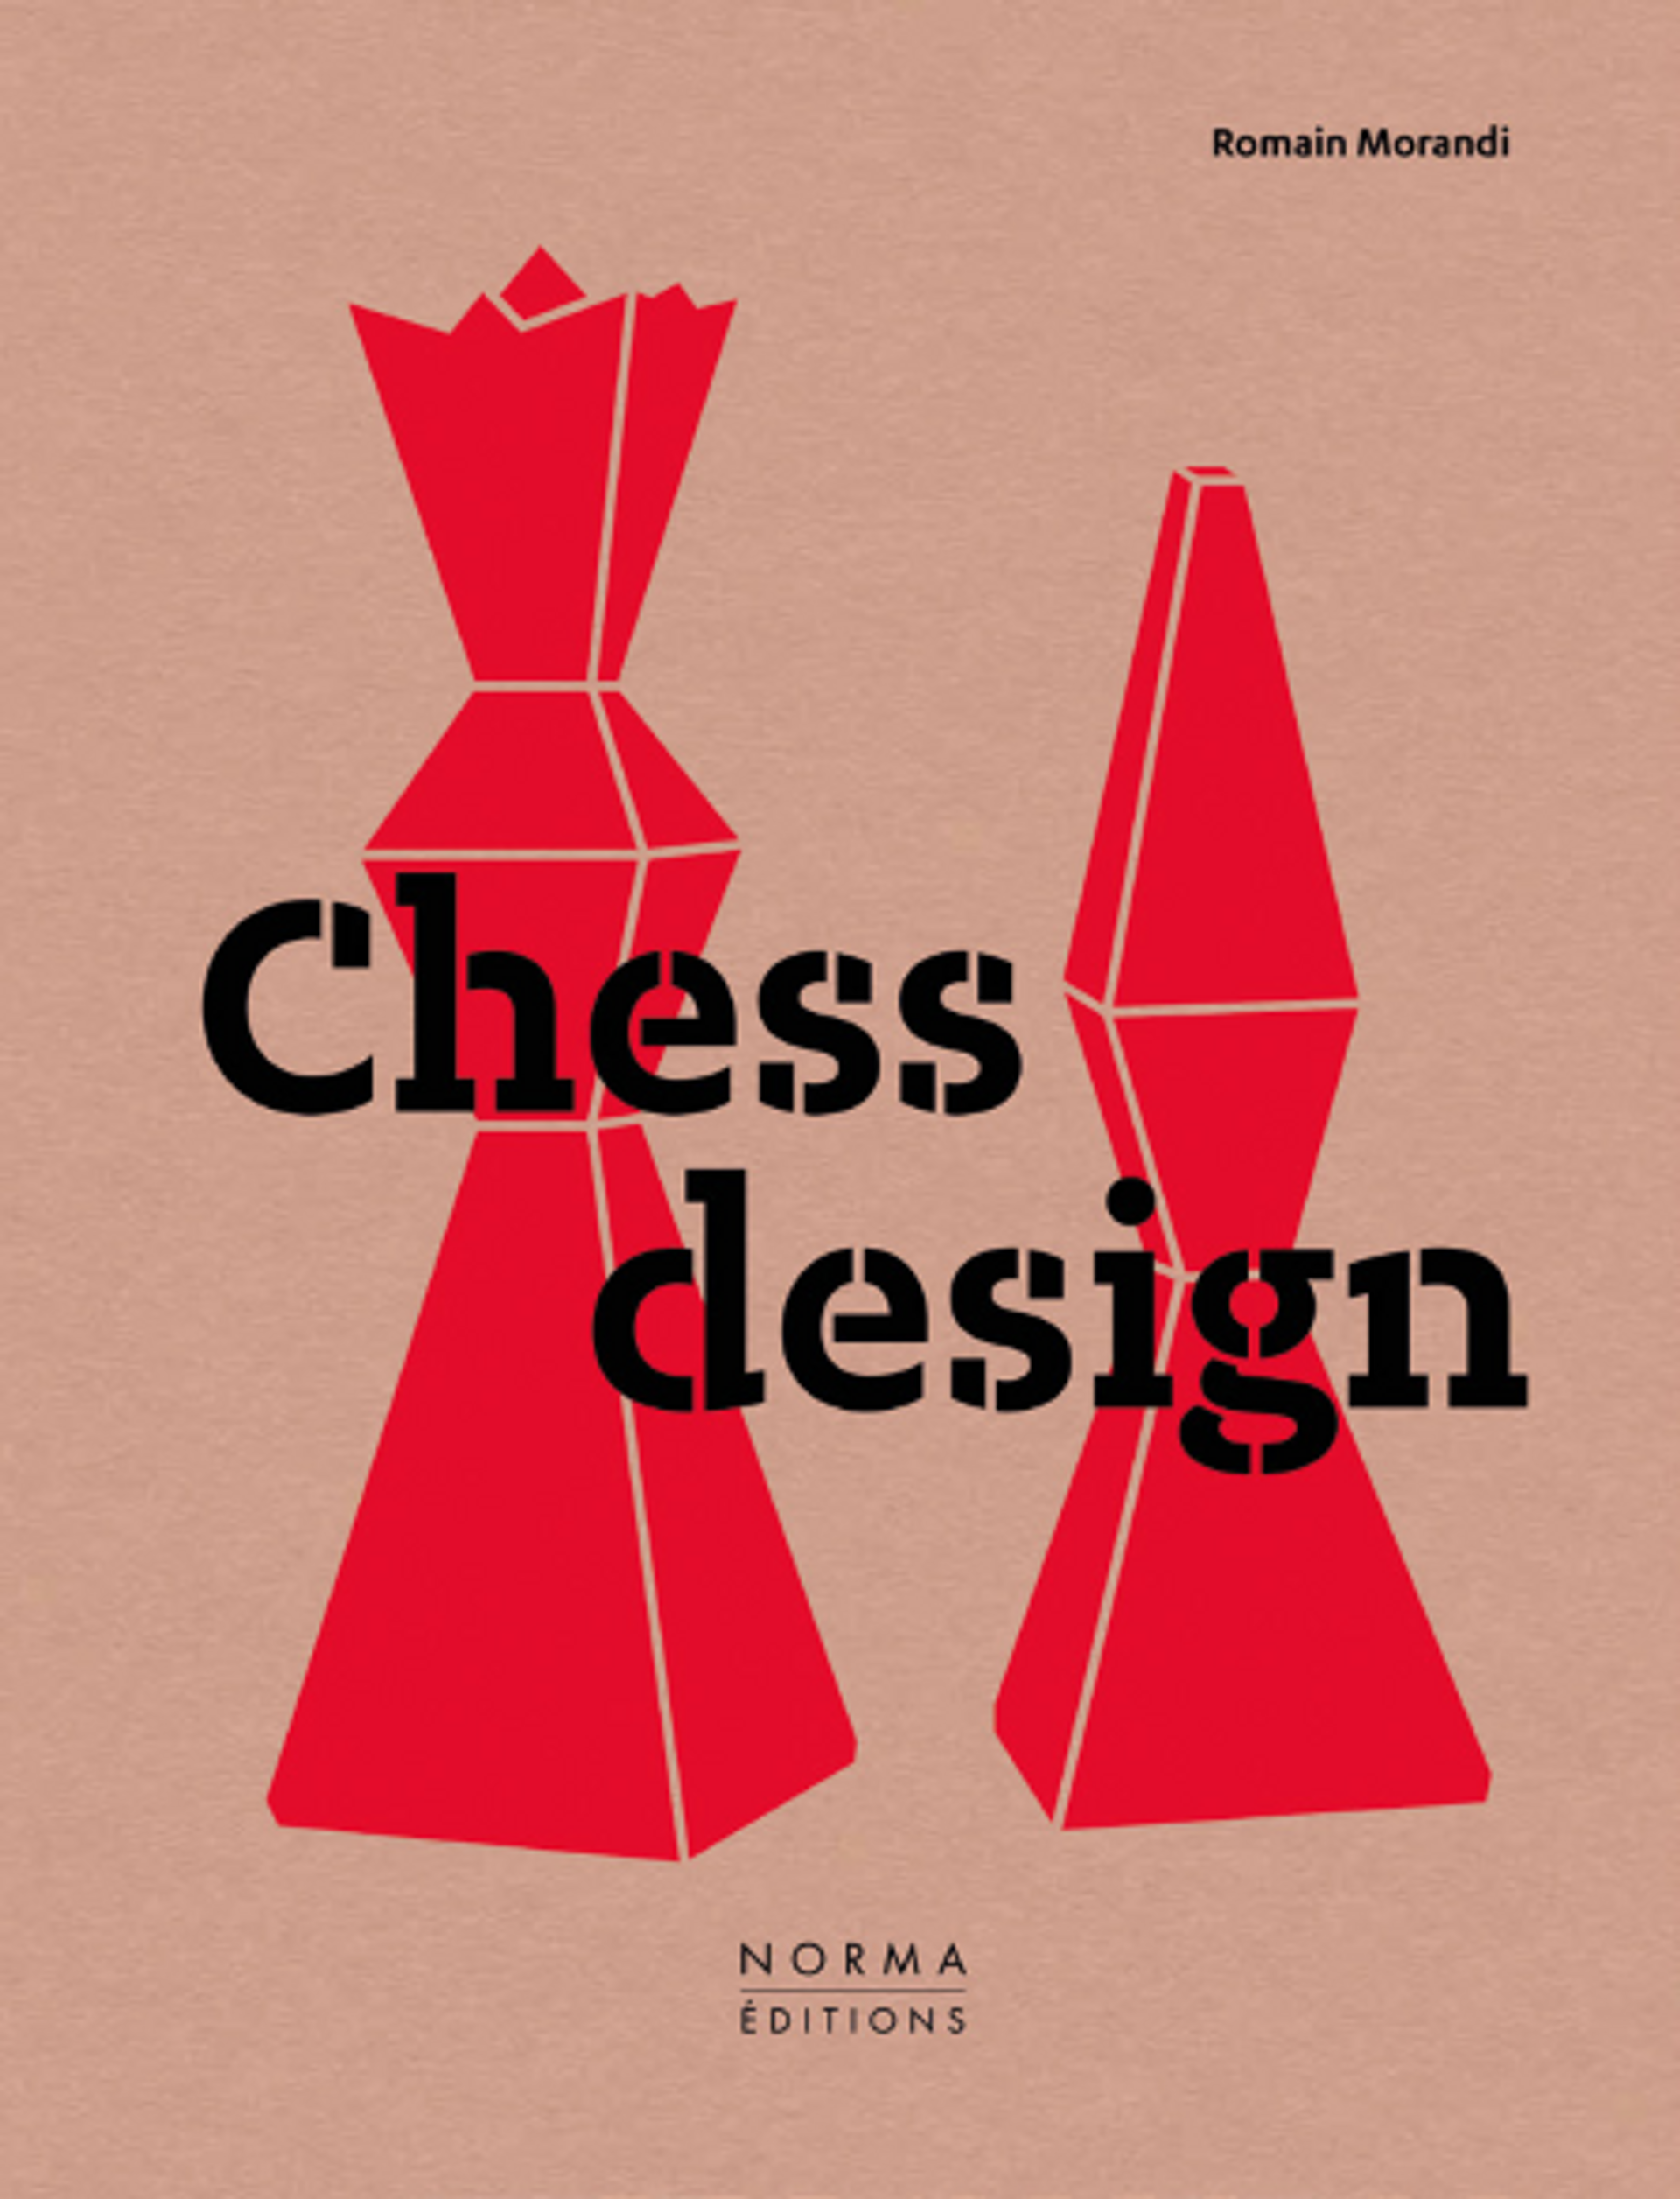 Romain Morandi, Chess design, Paris, Éditions Norma, 2022, 304 pages, 49 euros.
